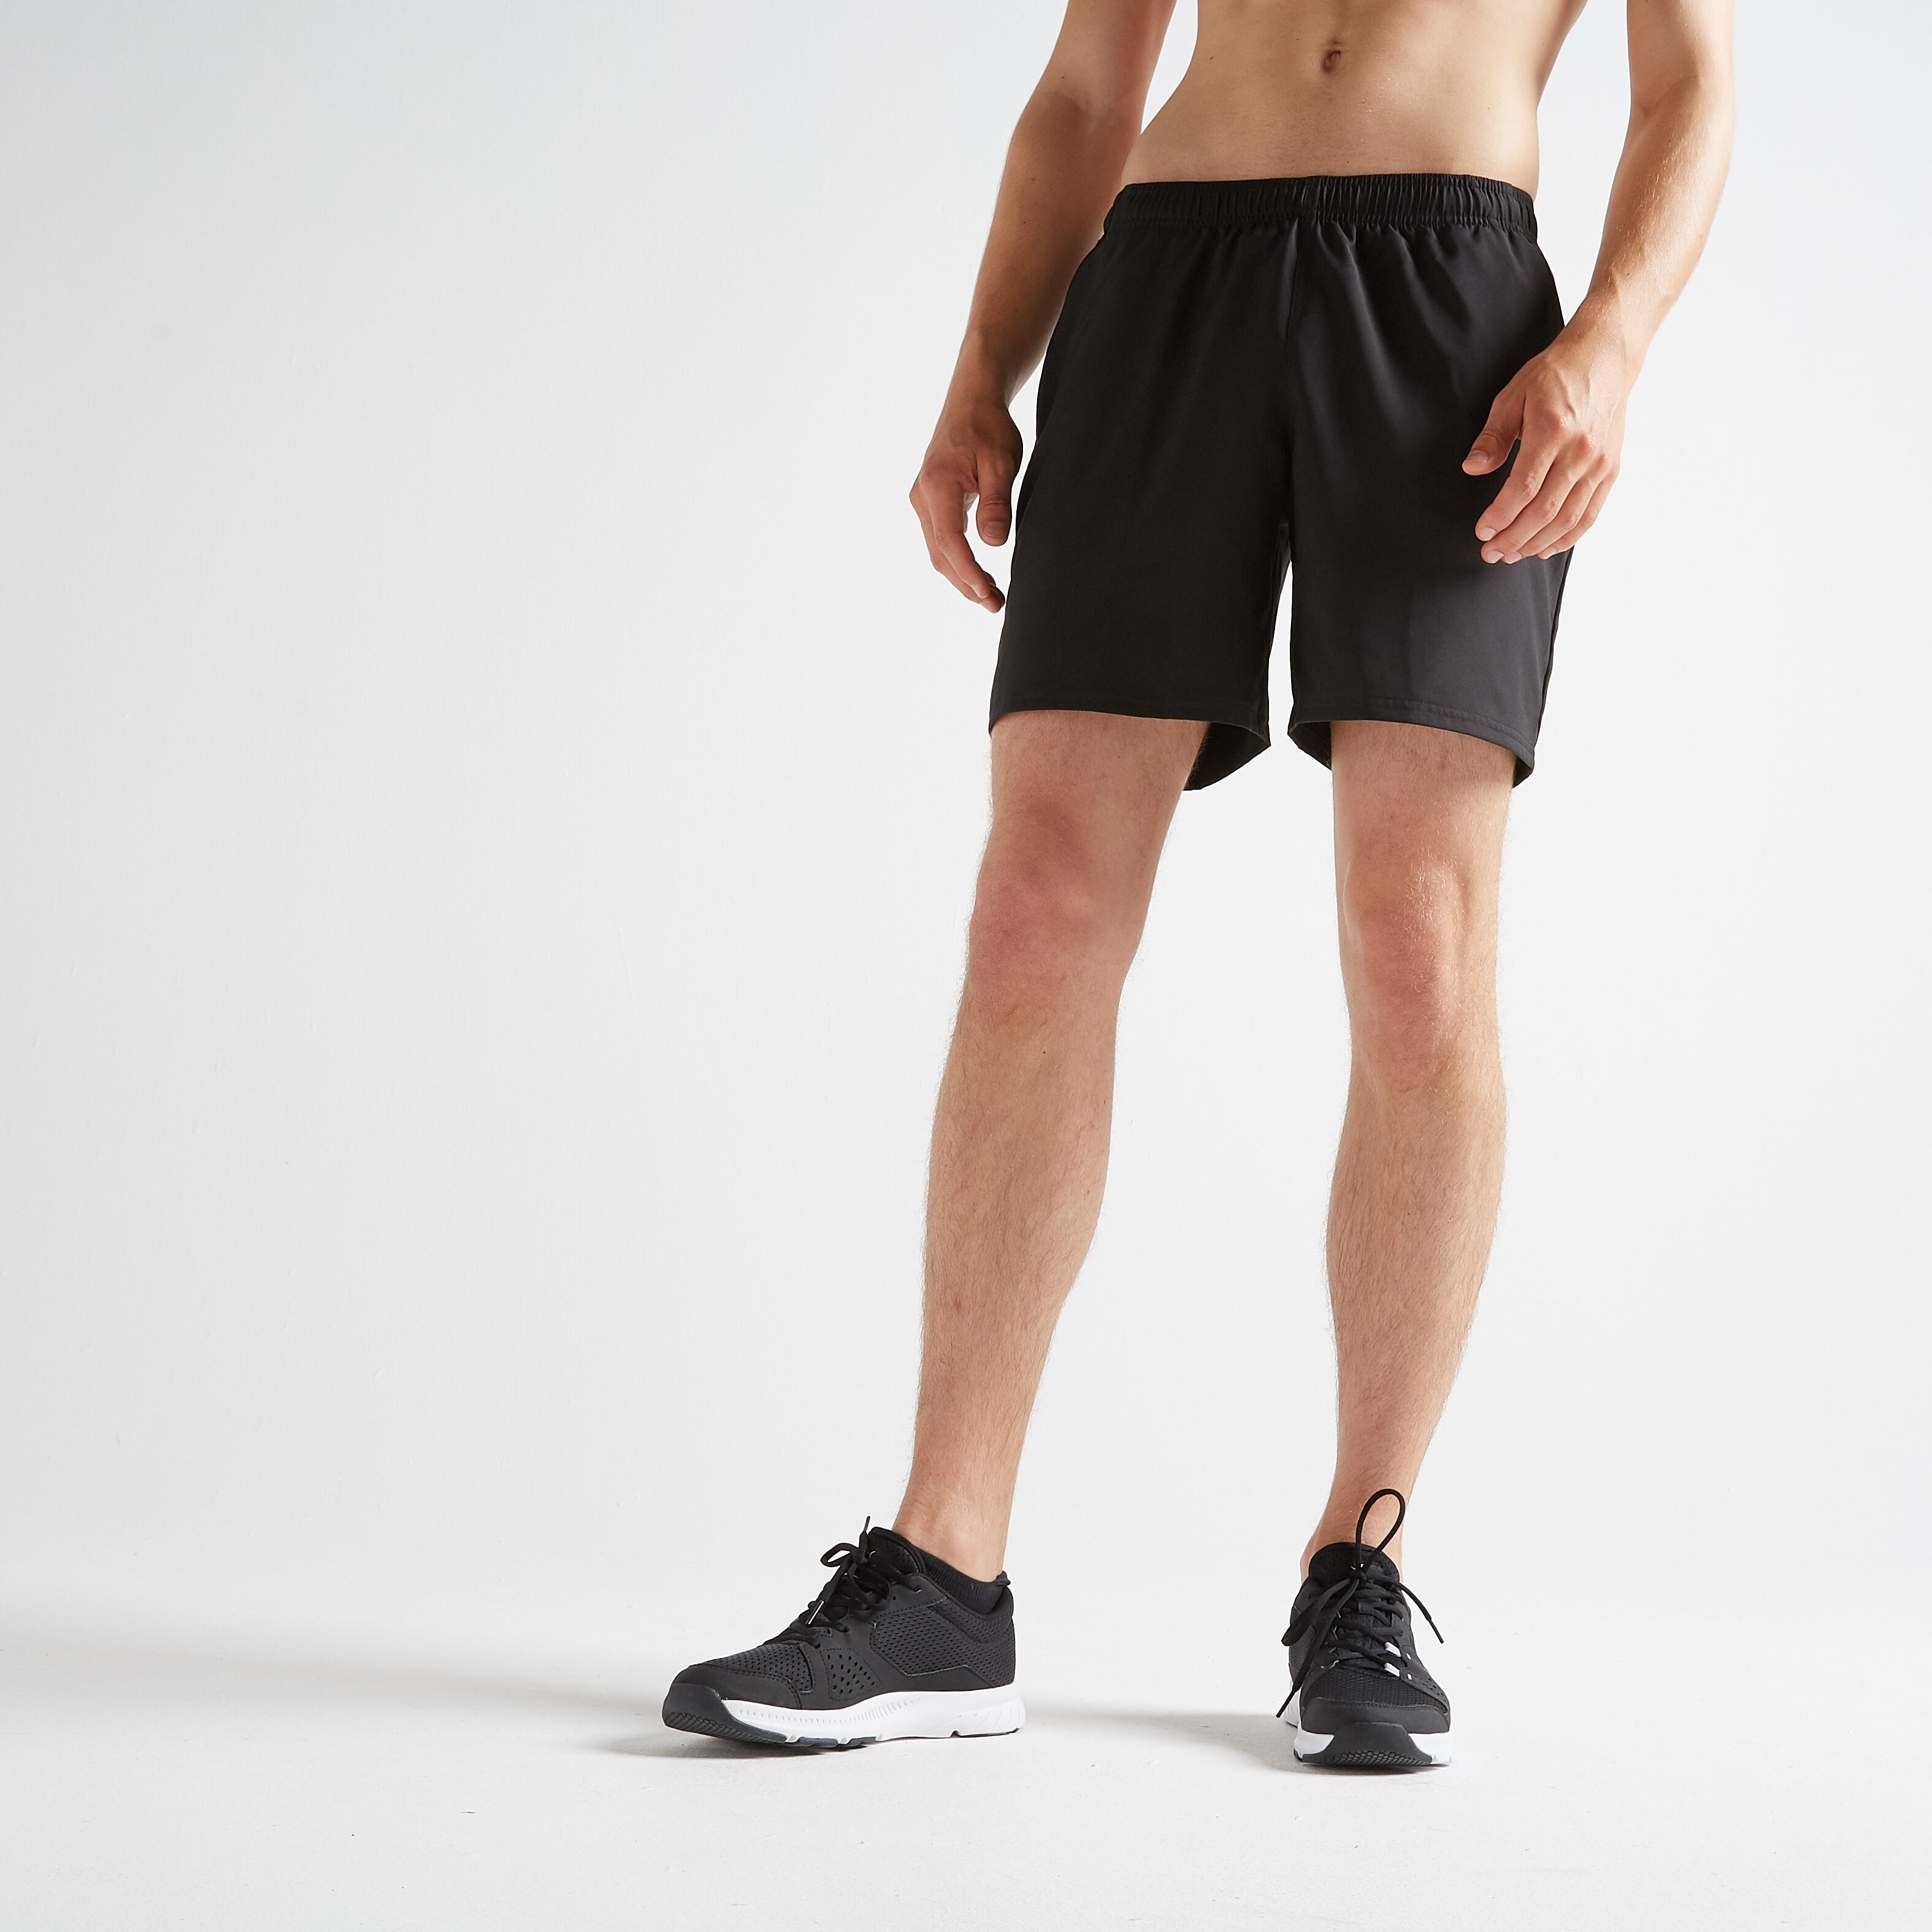 Pantalon scurt Fitness Cardio 100 Negru Bărbaţi La Oferta Online decathlon imagine La Oferta Online